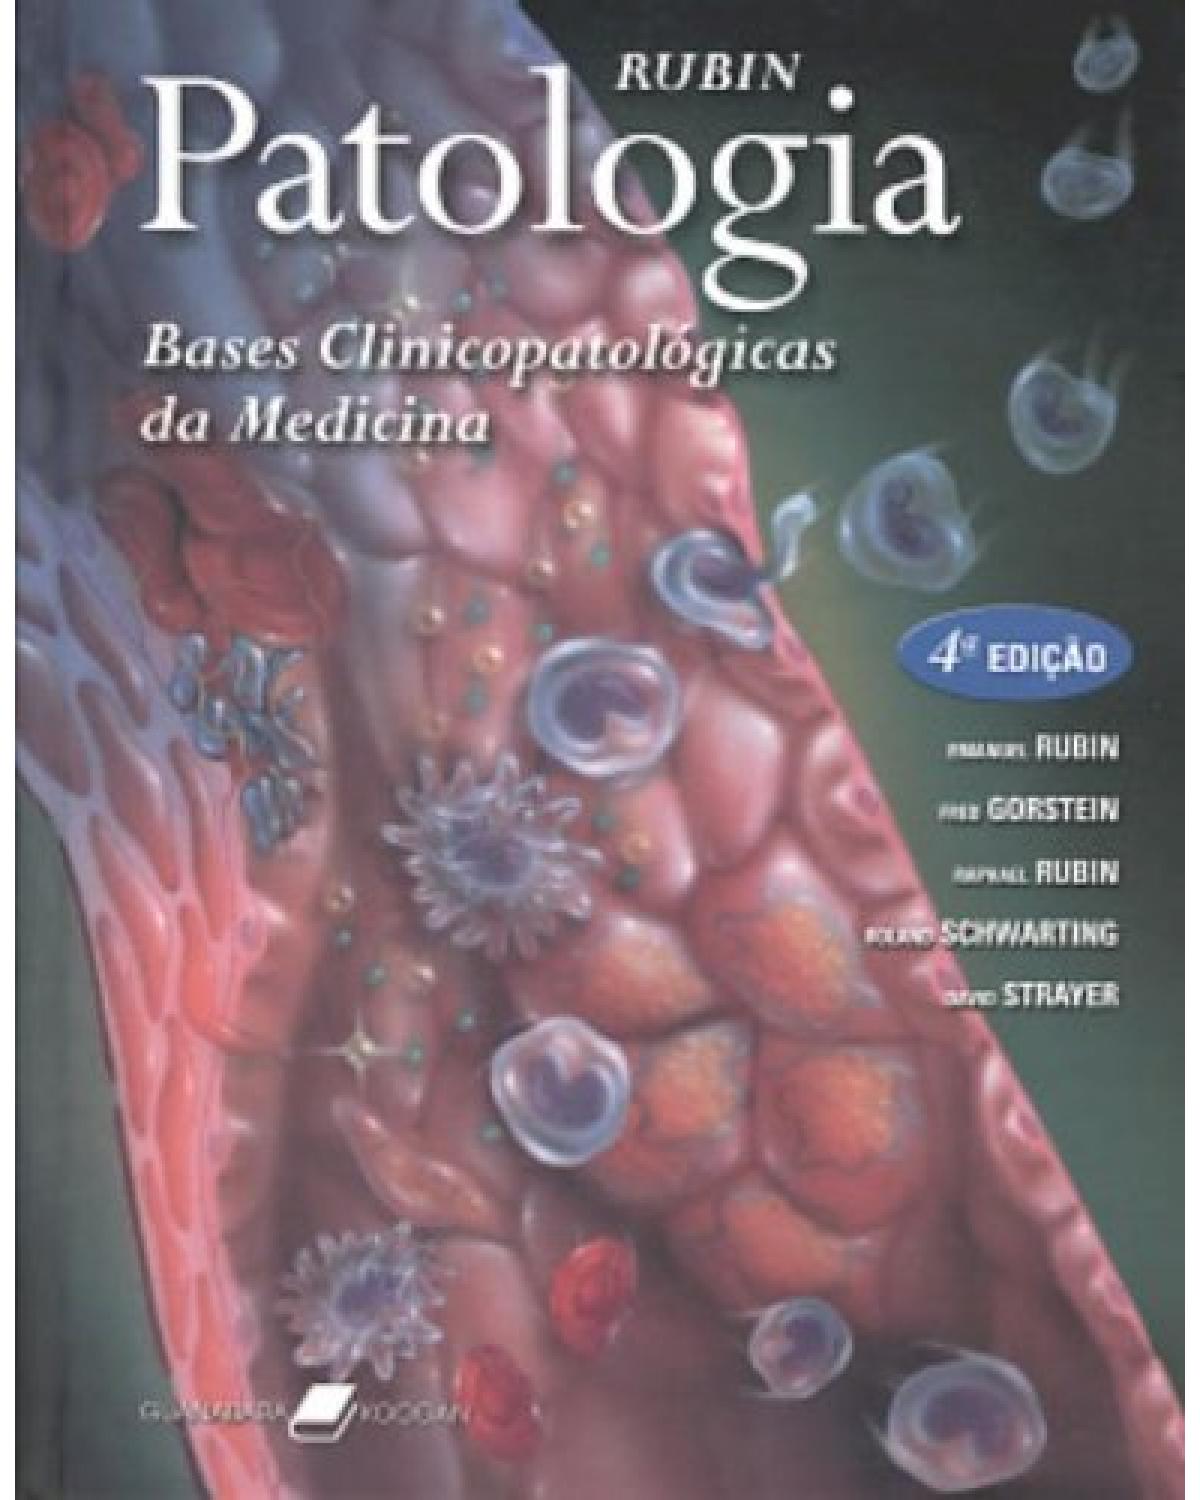 Rubin - Patologia - Bases clinicopatológicas da medicina - 4ª Edição | 2006